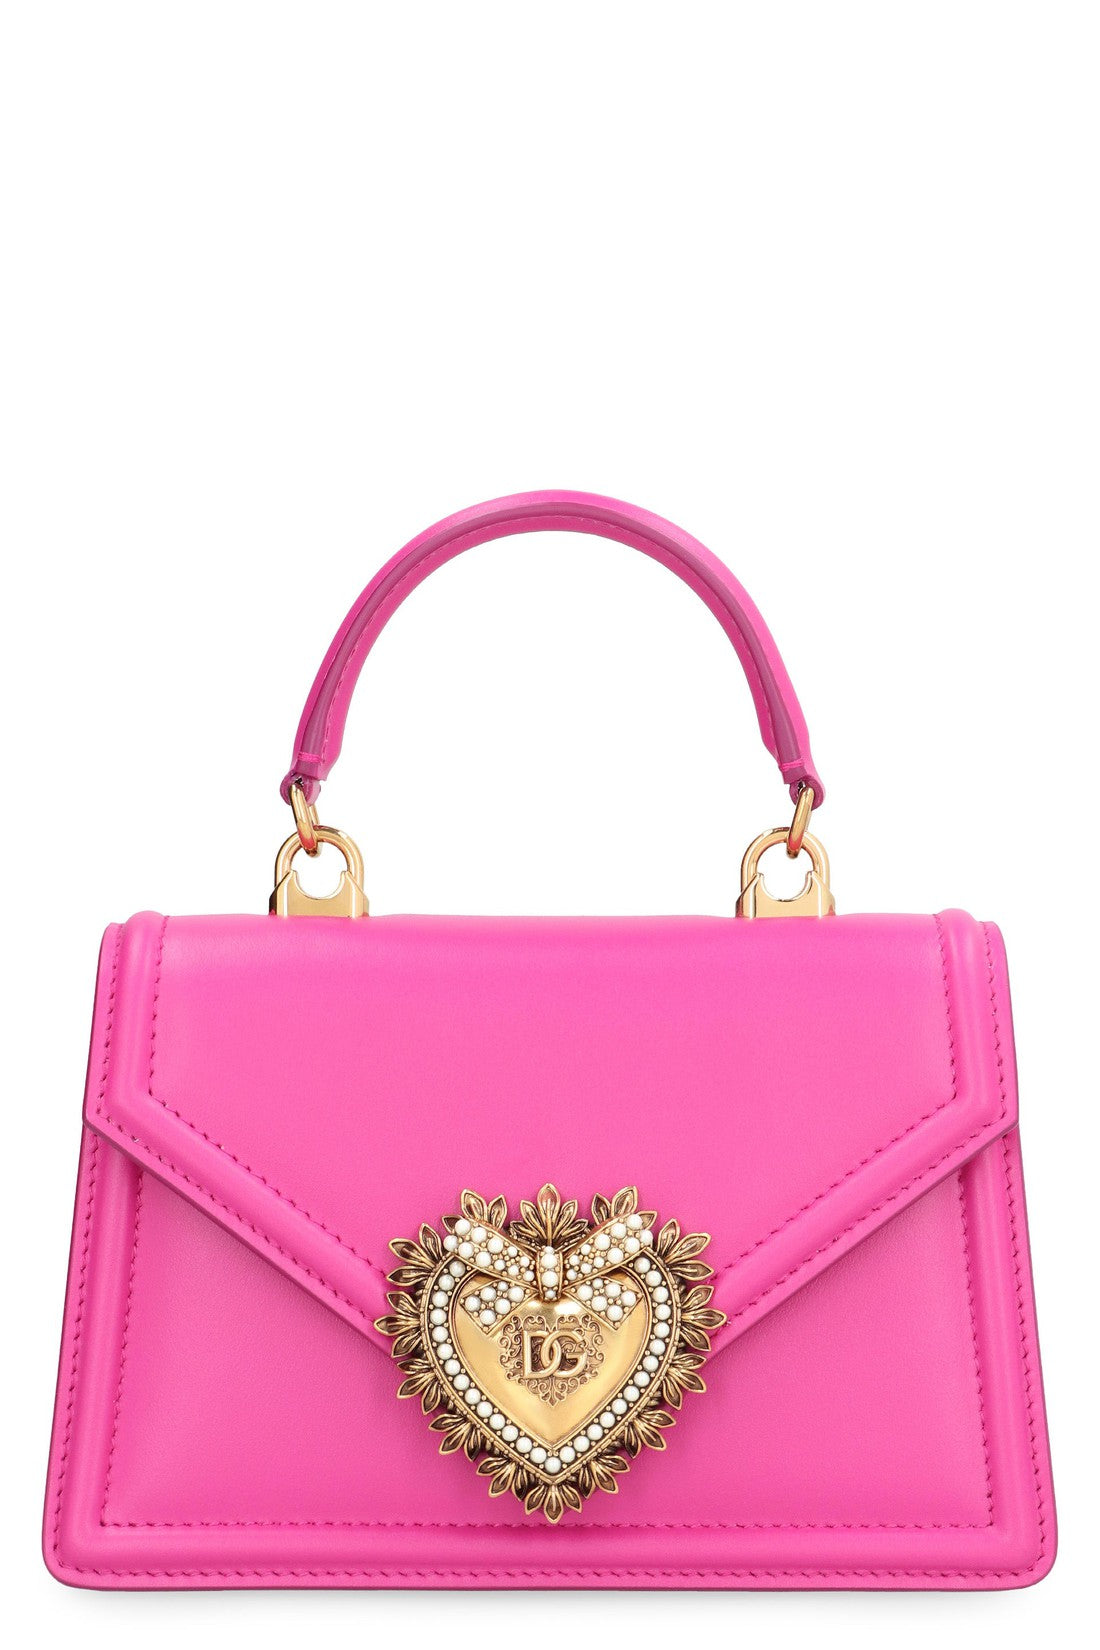 Dolce & Gabbana-OUTLET-SALE-Devotion leather mini bag-ARCHIVIST